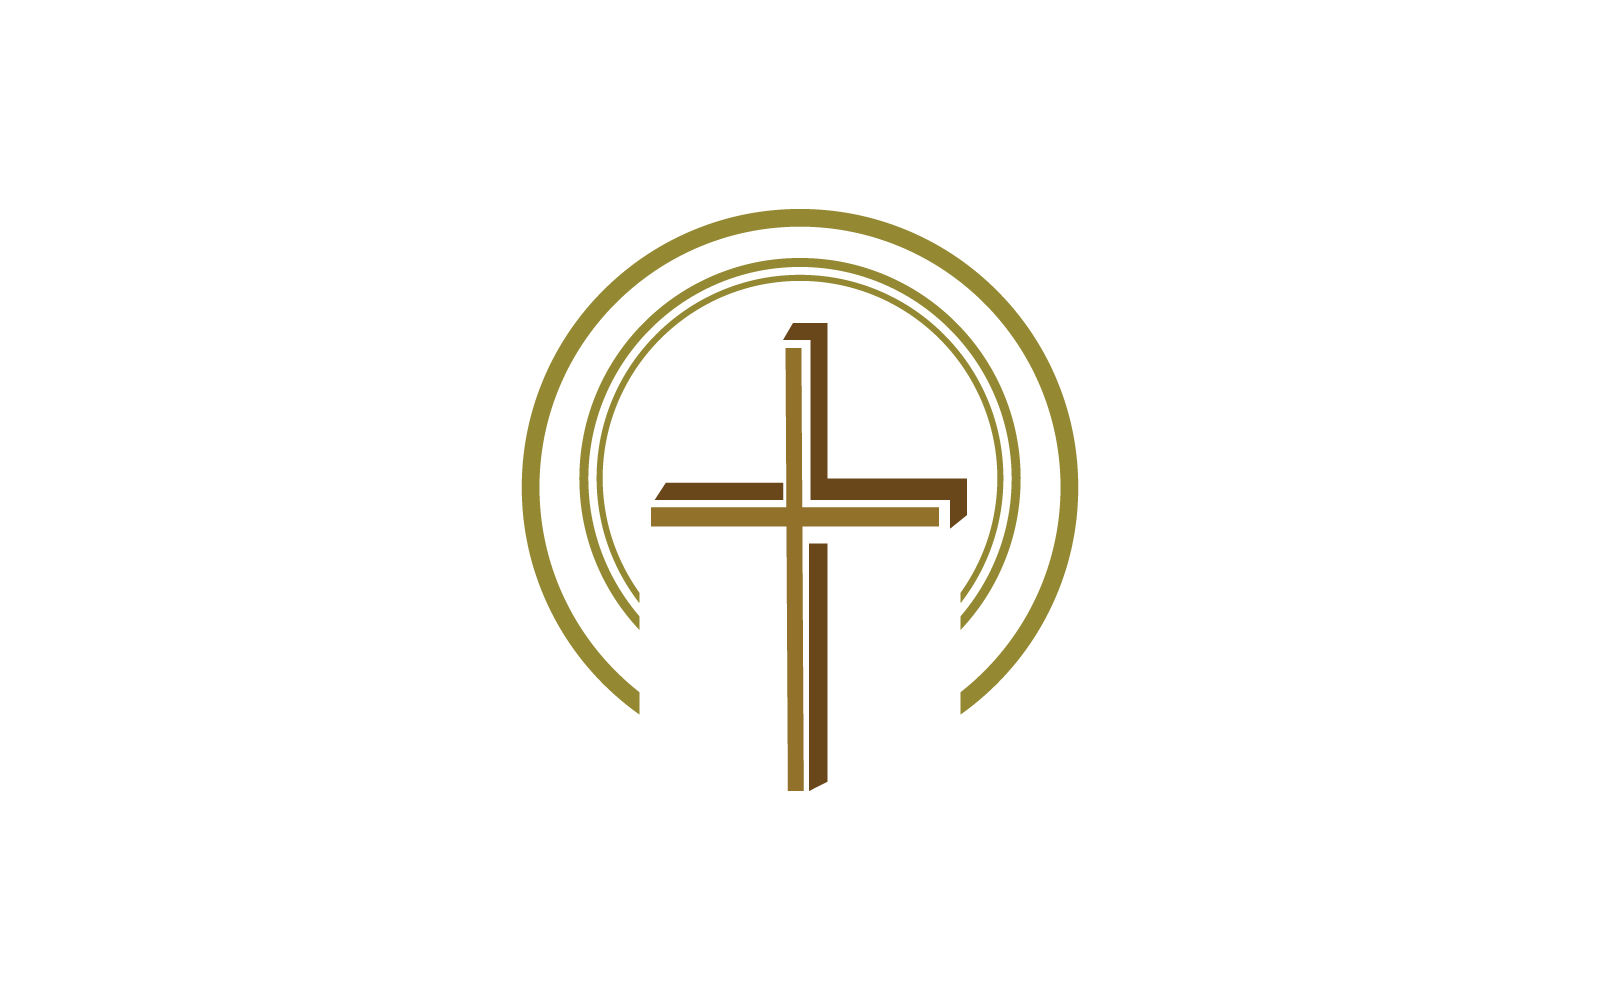 Chiesa logo illustrazione vettoriale design piatto